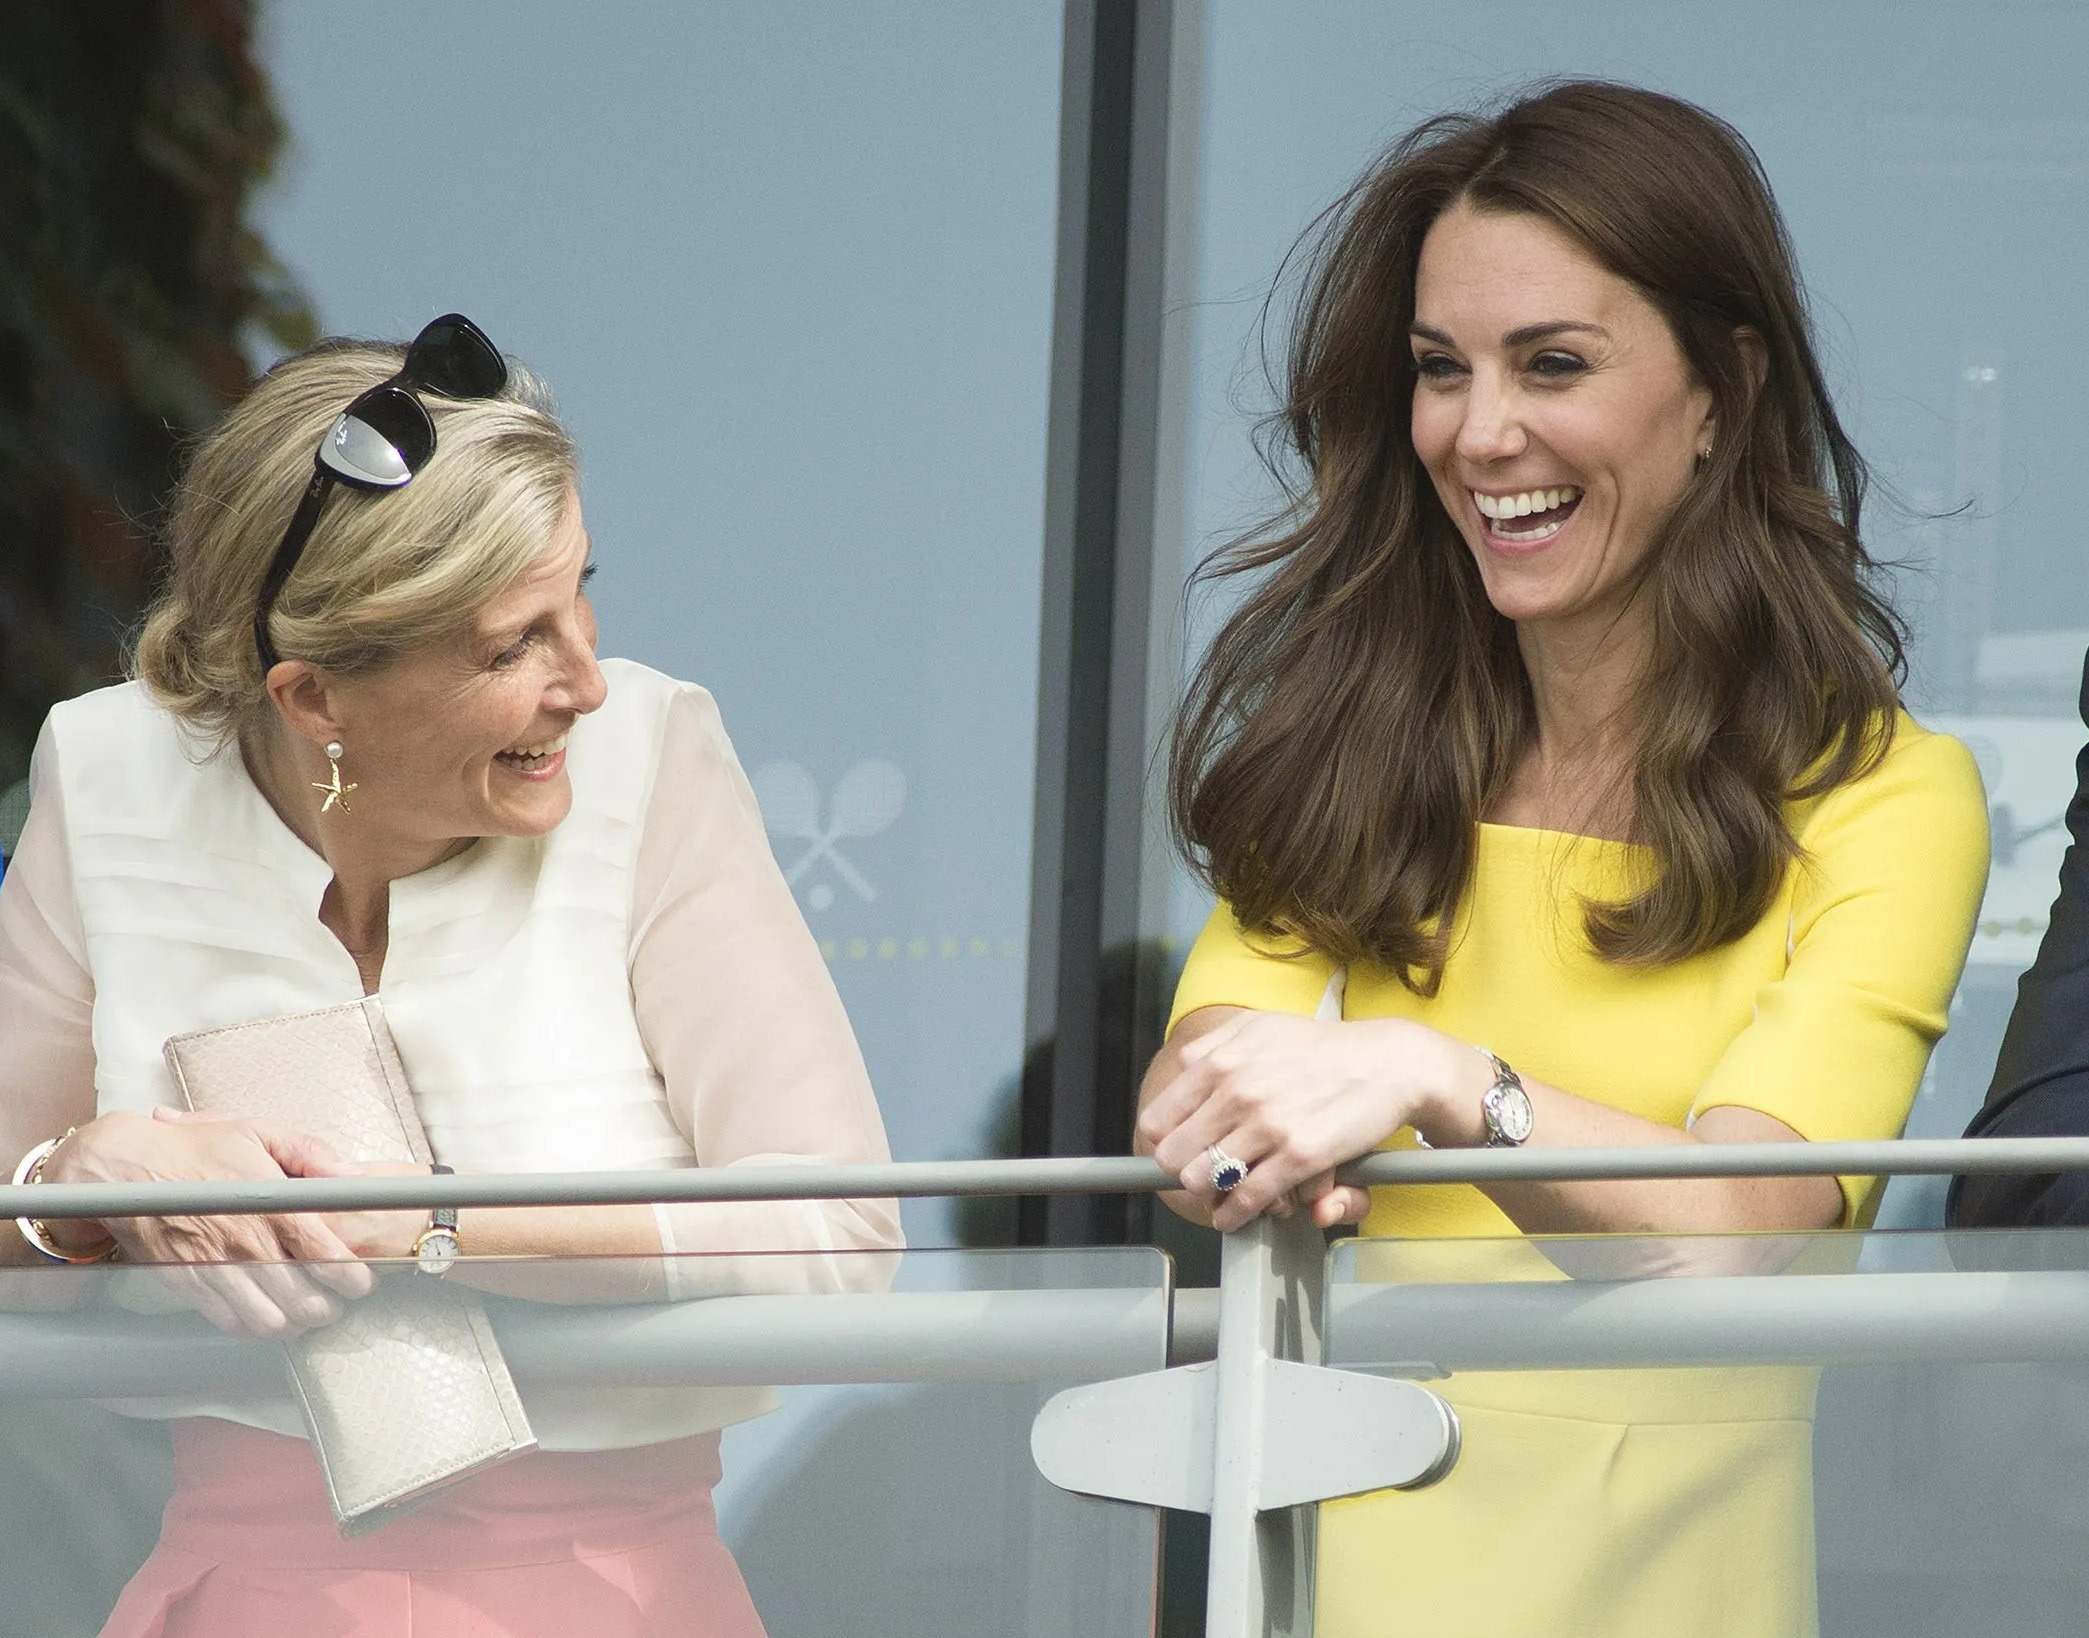 Man sieht die beiden königlichen Frauen oft zusammen lachen